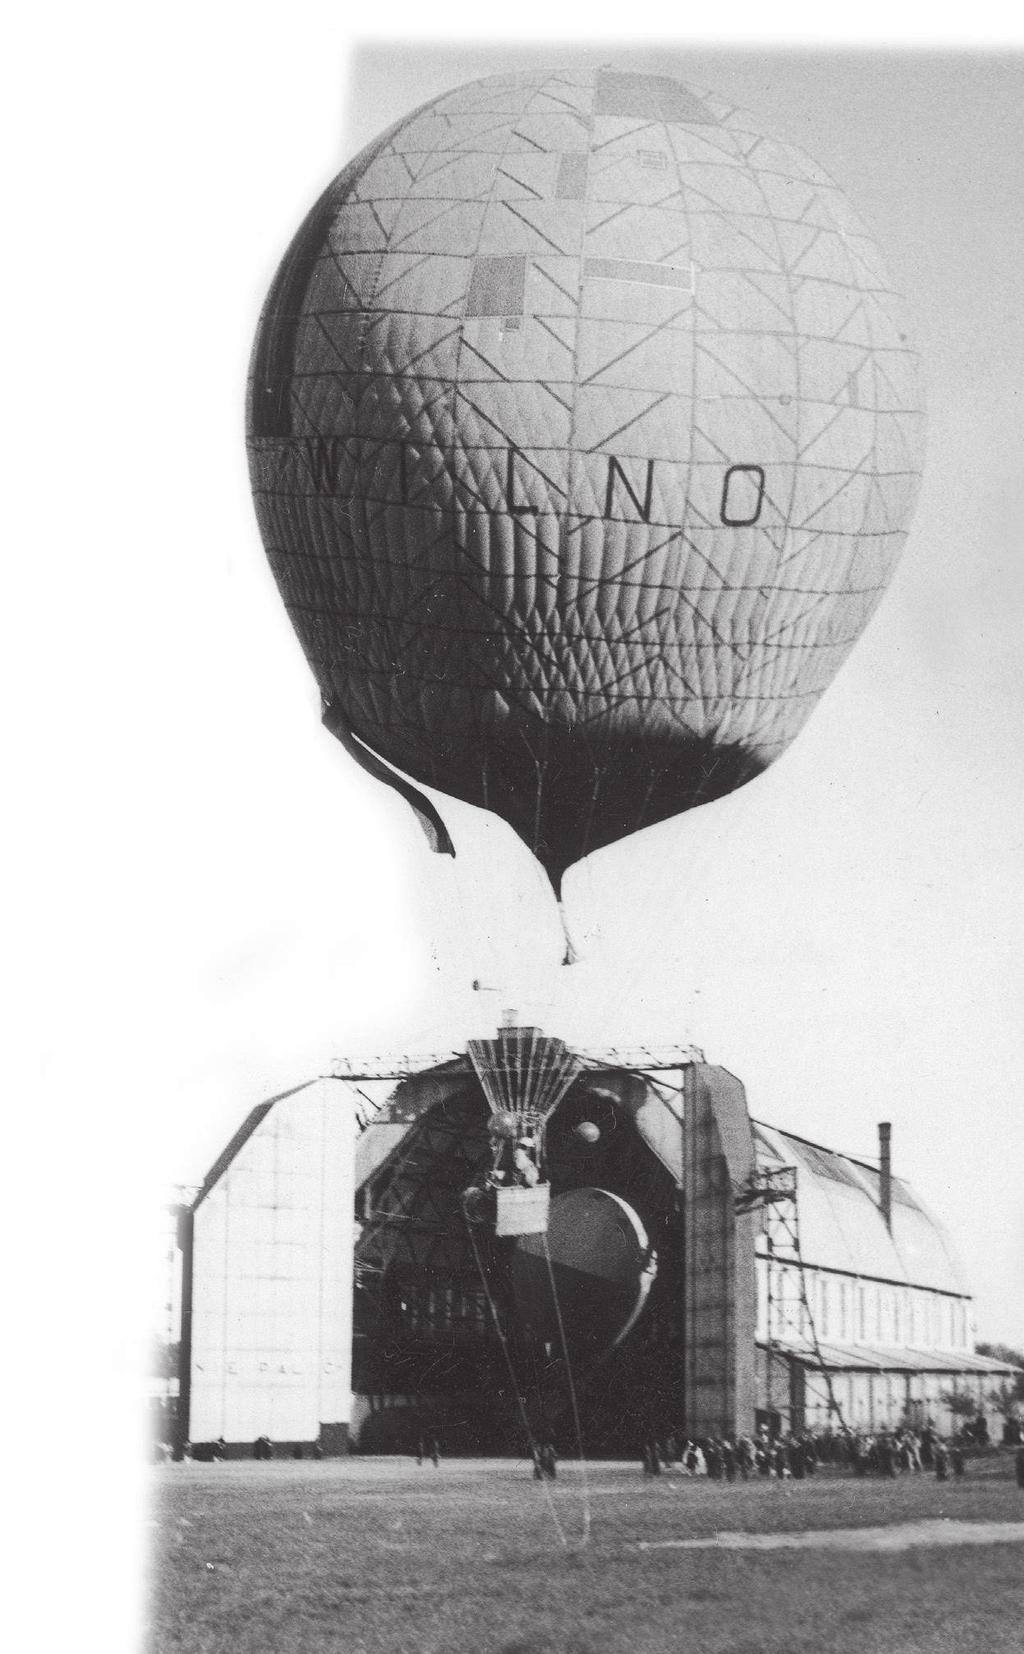 Balon ten wykonywał lot w ustalonym wcześniej promieniu od miejsca startu. Ścigali go zawodnicy poruszający się samochodami.